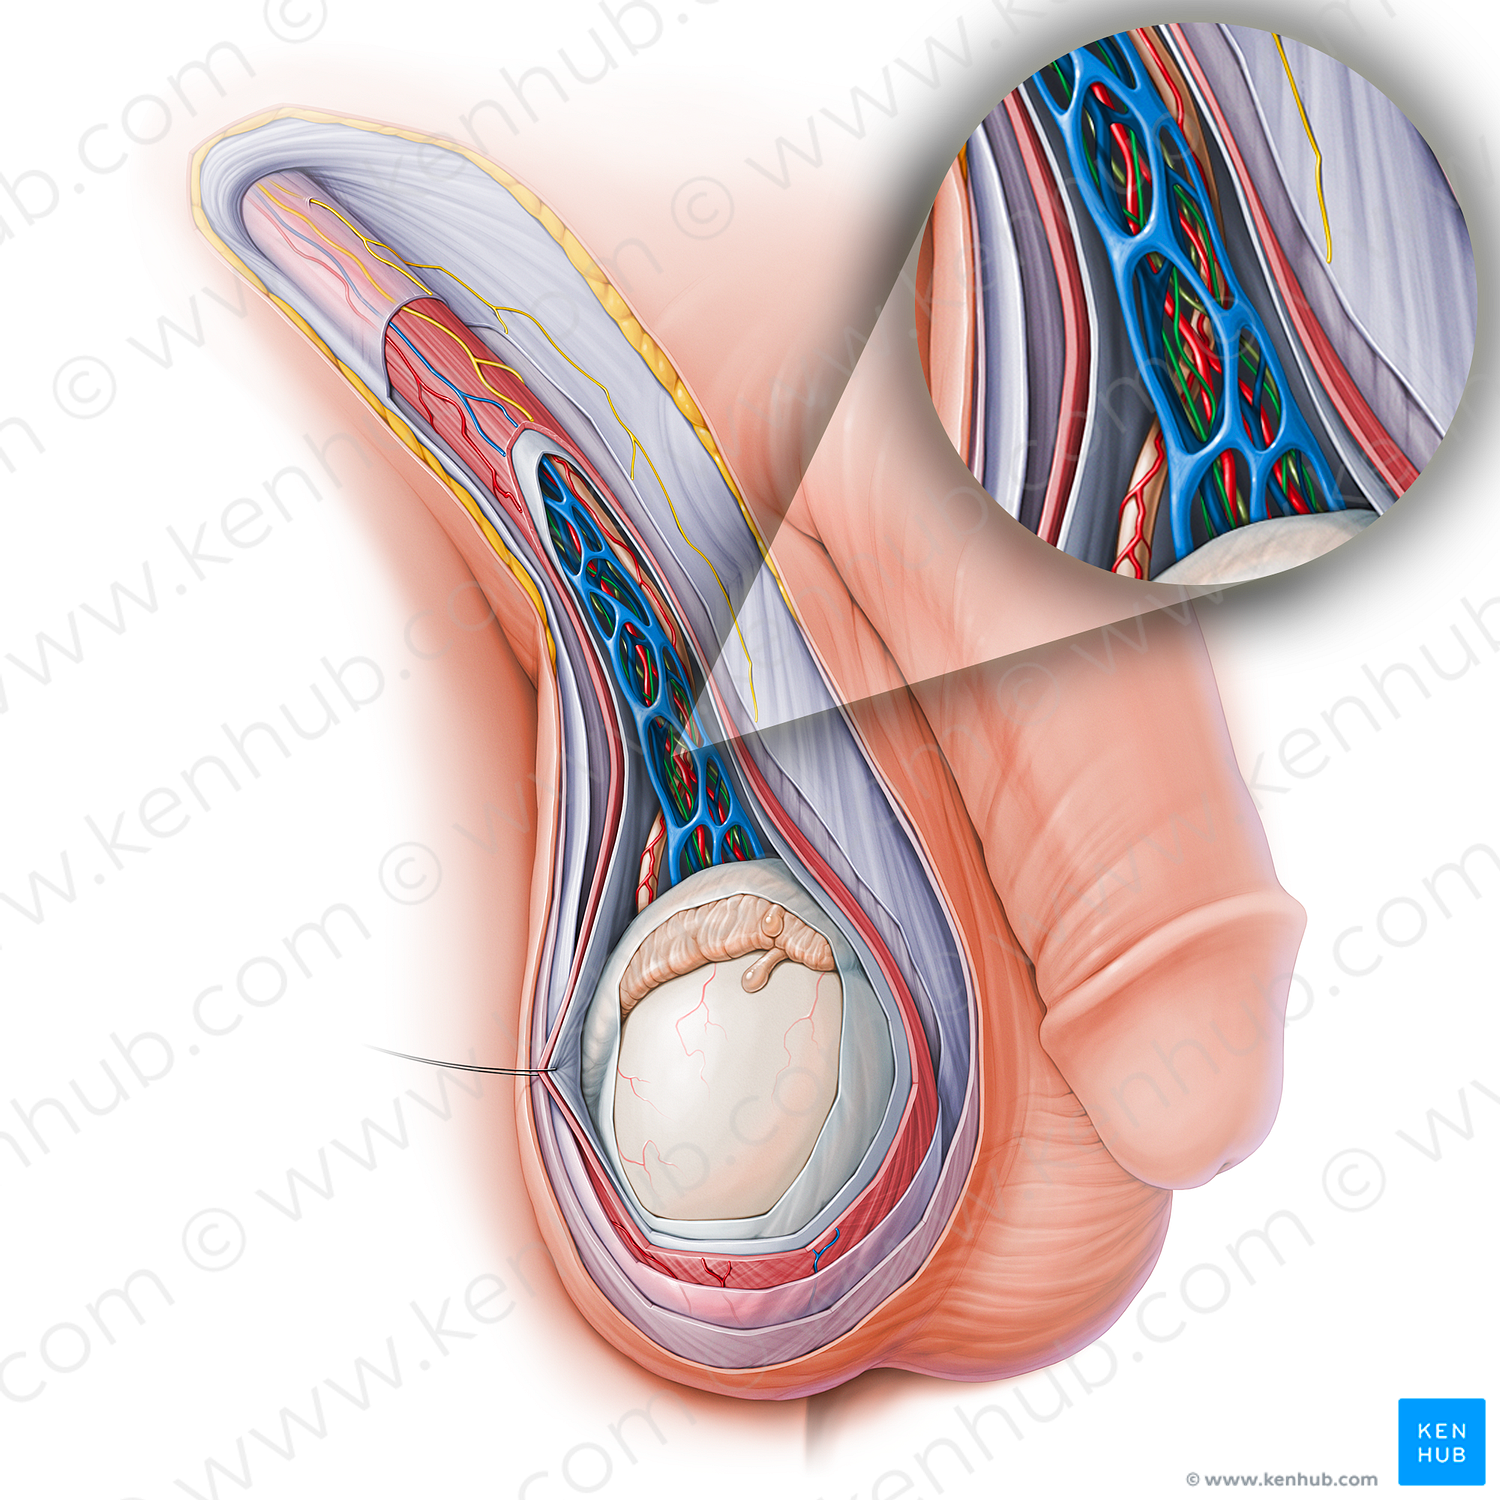 Autonomic testicular plexus (#15142)